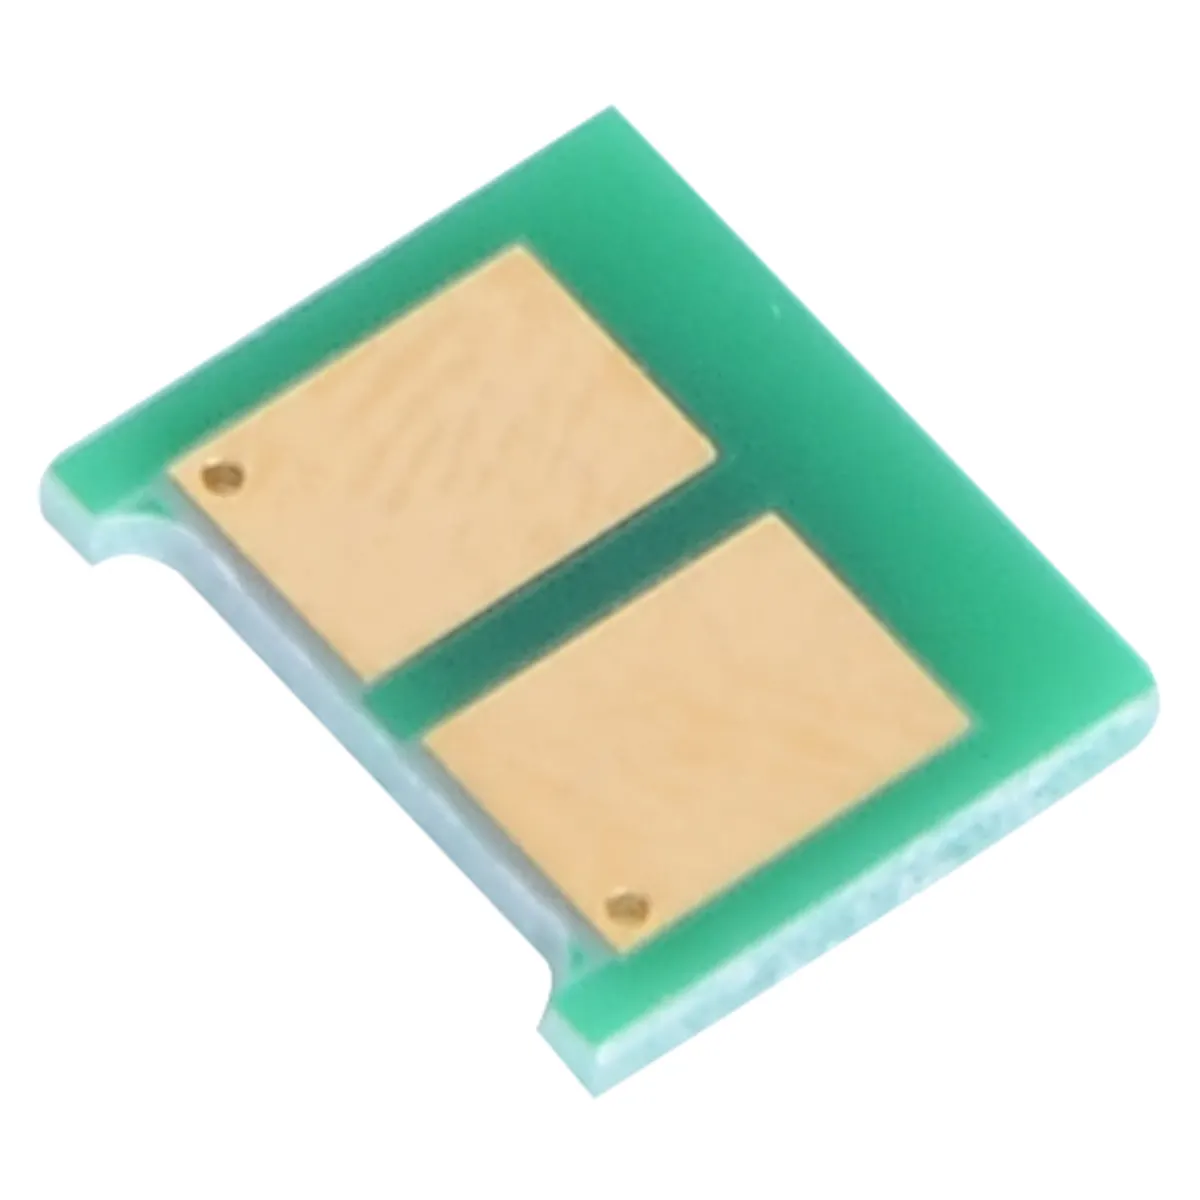 Chip di toner compatibile CE 285A per HP P1100/P1102/P1102W/ M1132/M1210/M1212nf/M1214nf ripristino ricarica cartuccia stampante laser